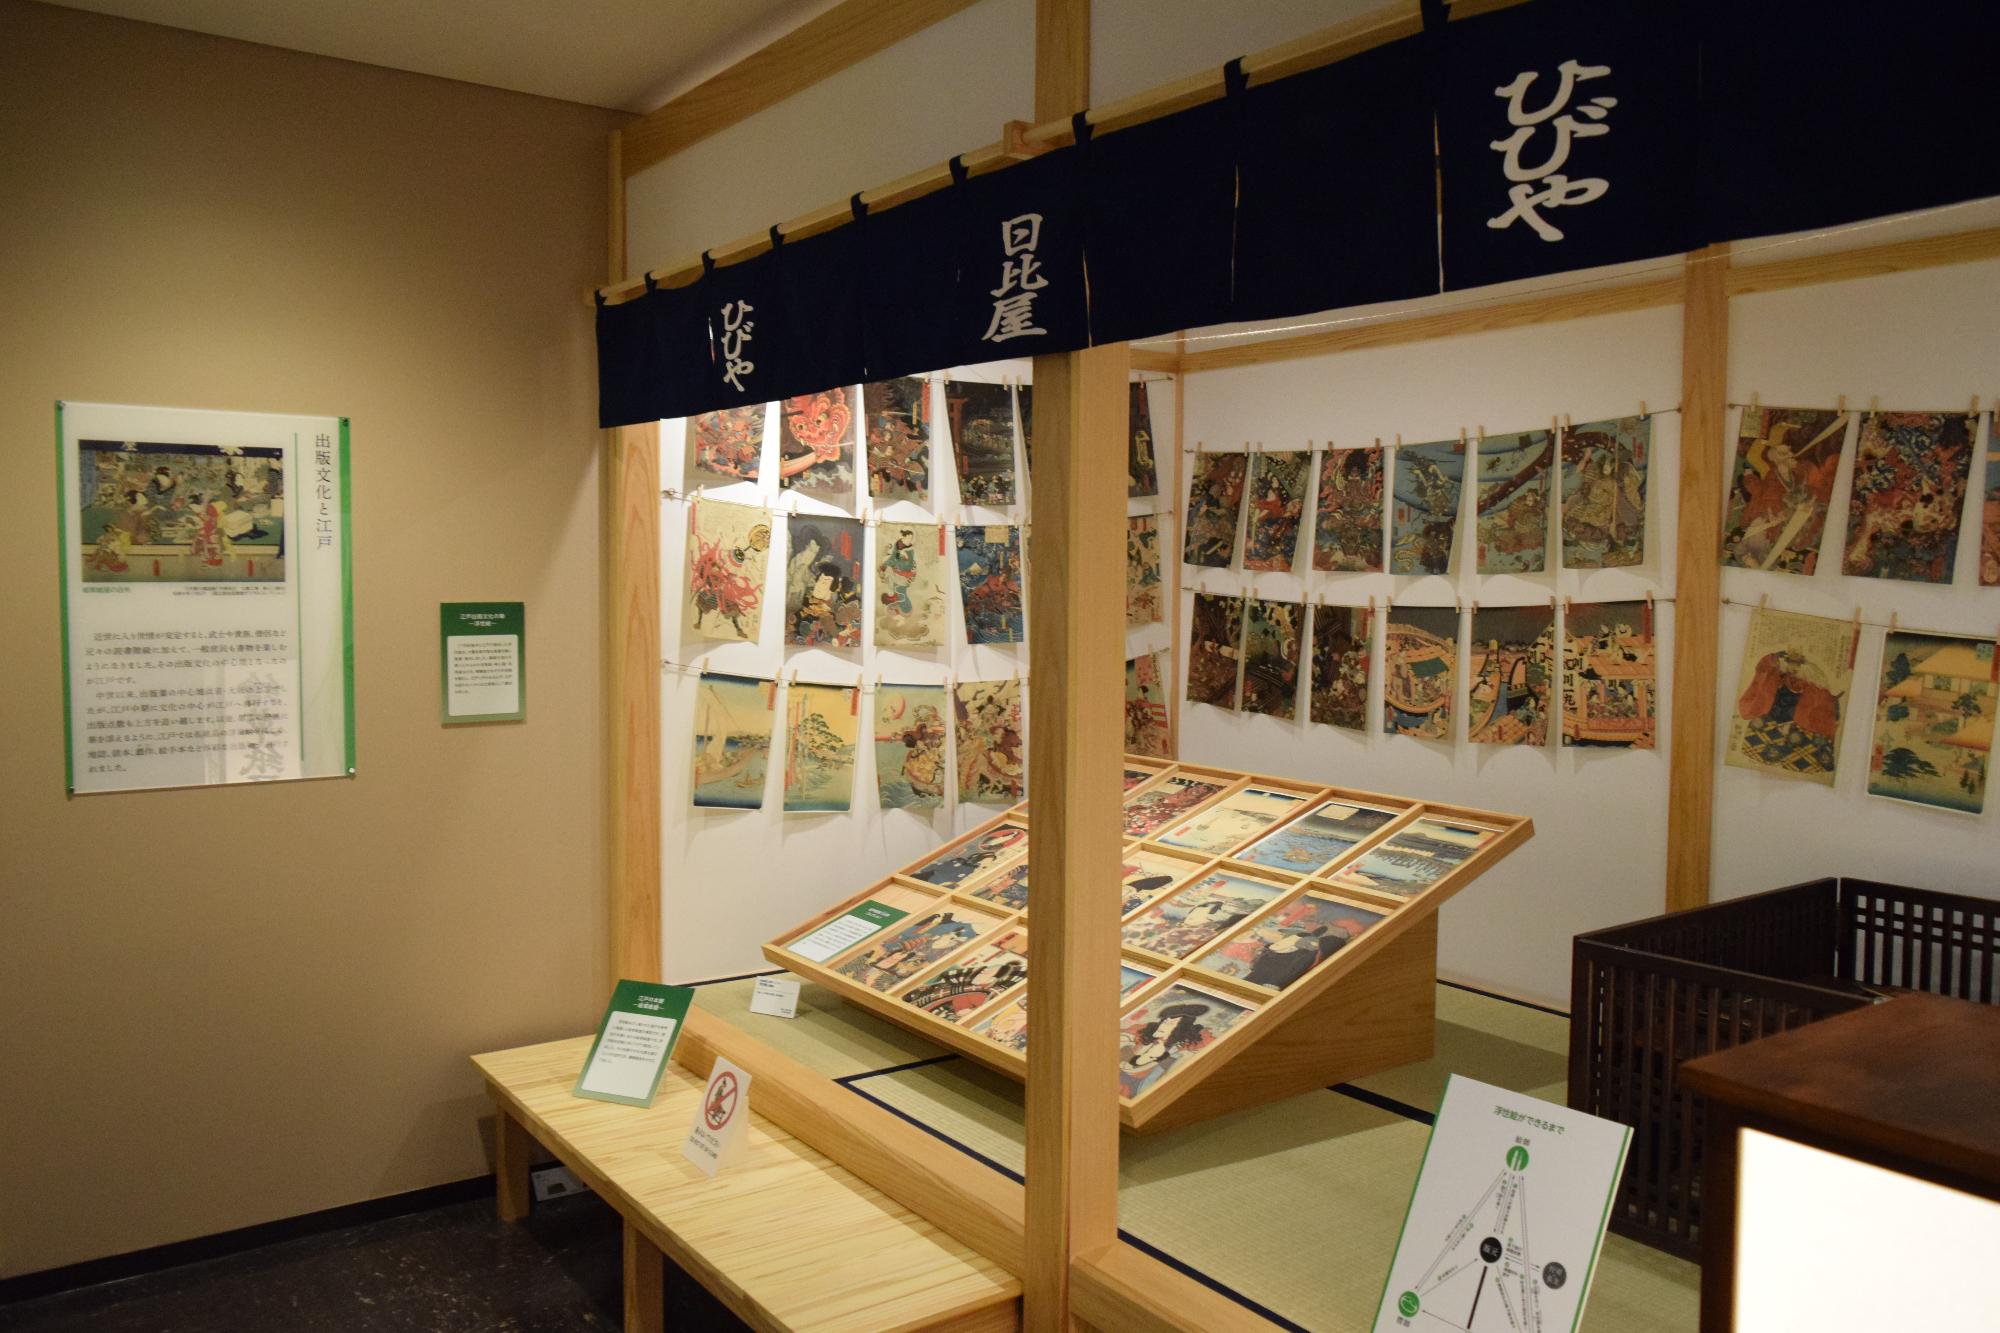 畳の上にたくさんの展示品が飾られ、壁にもいろいろな物が展示されている常設展示室の写真